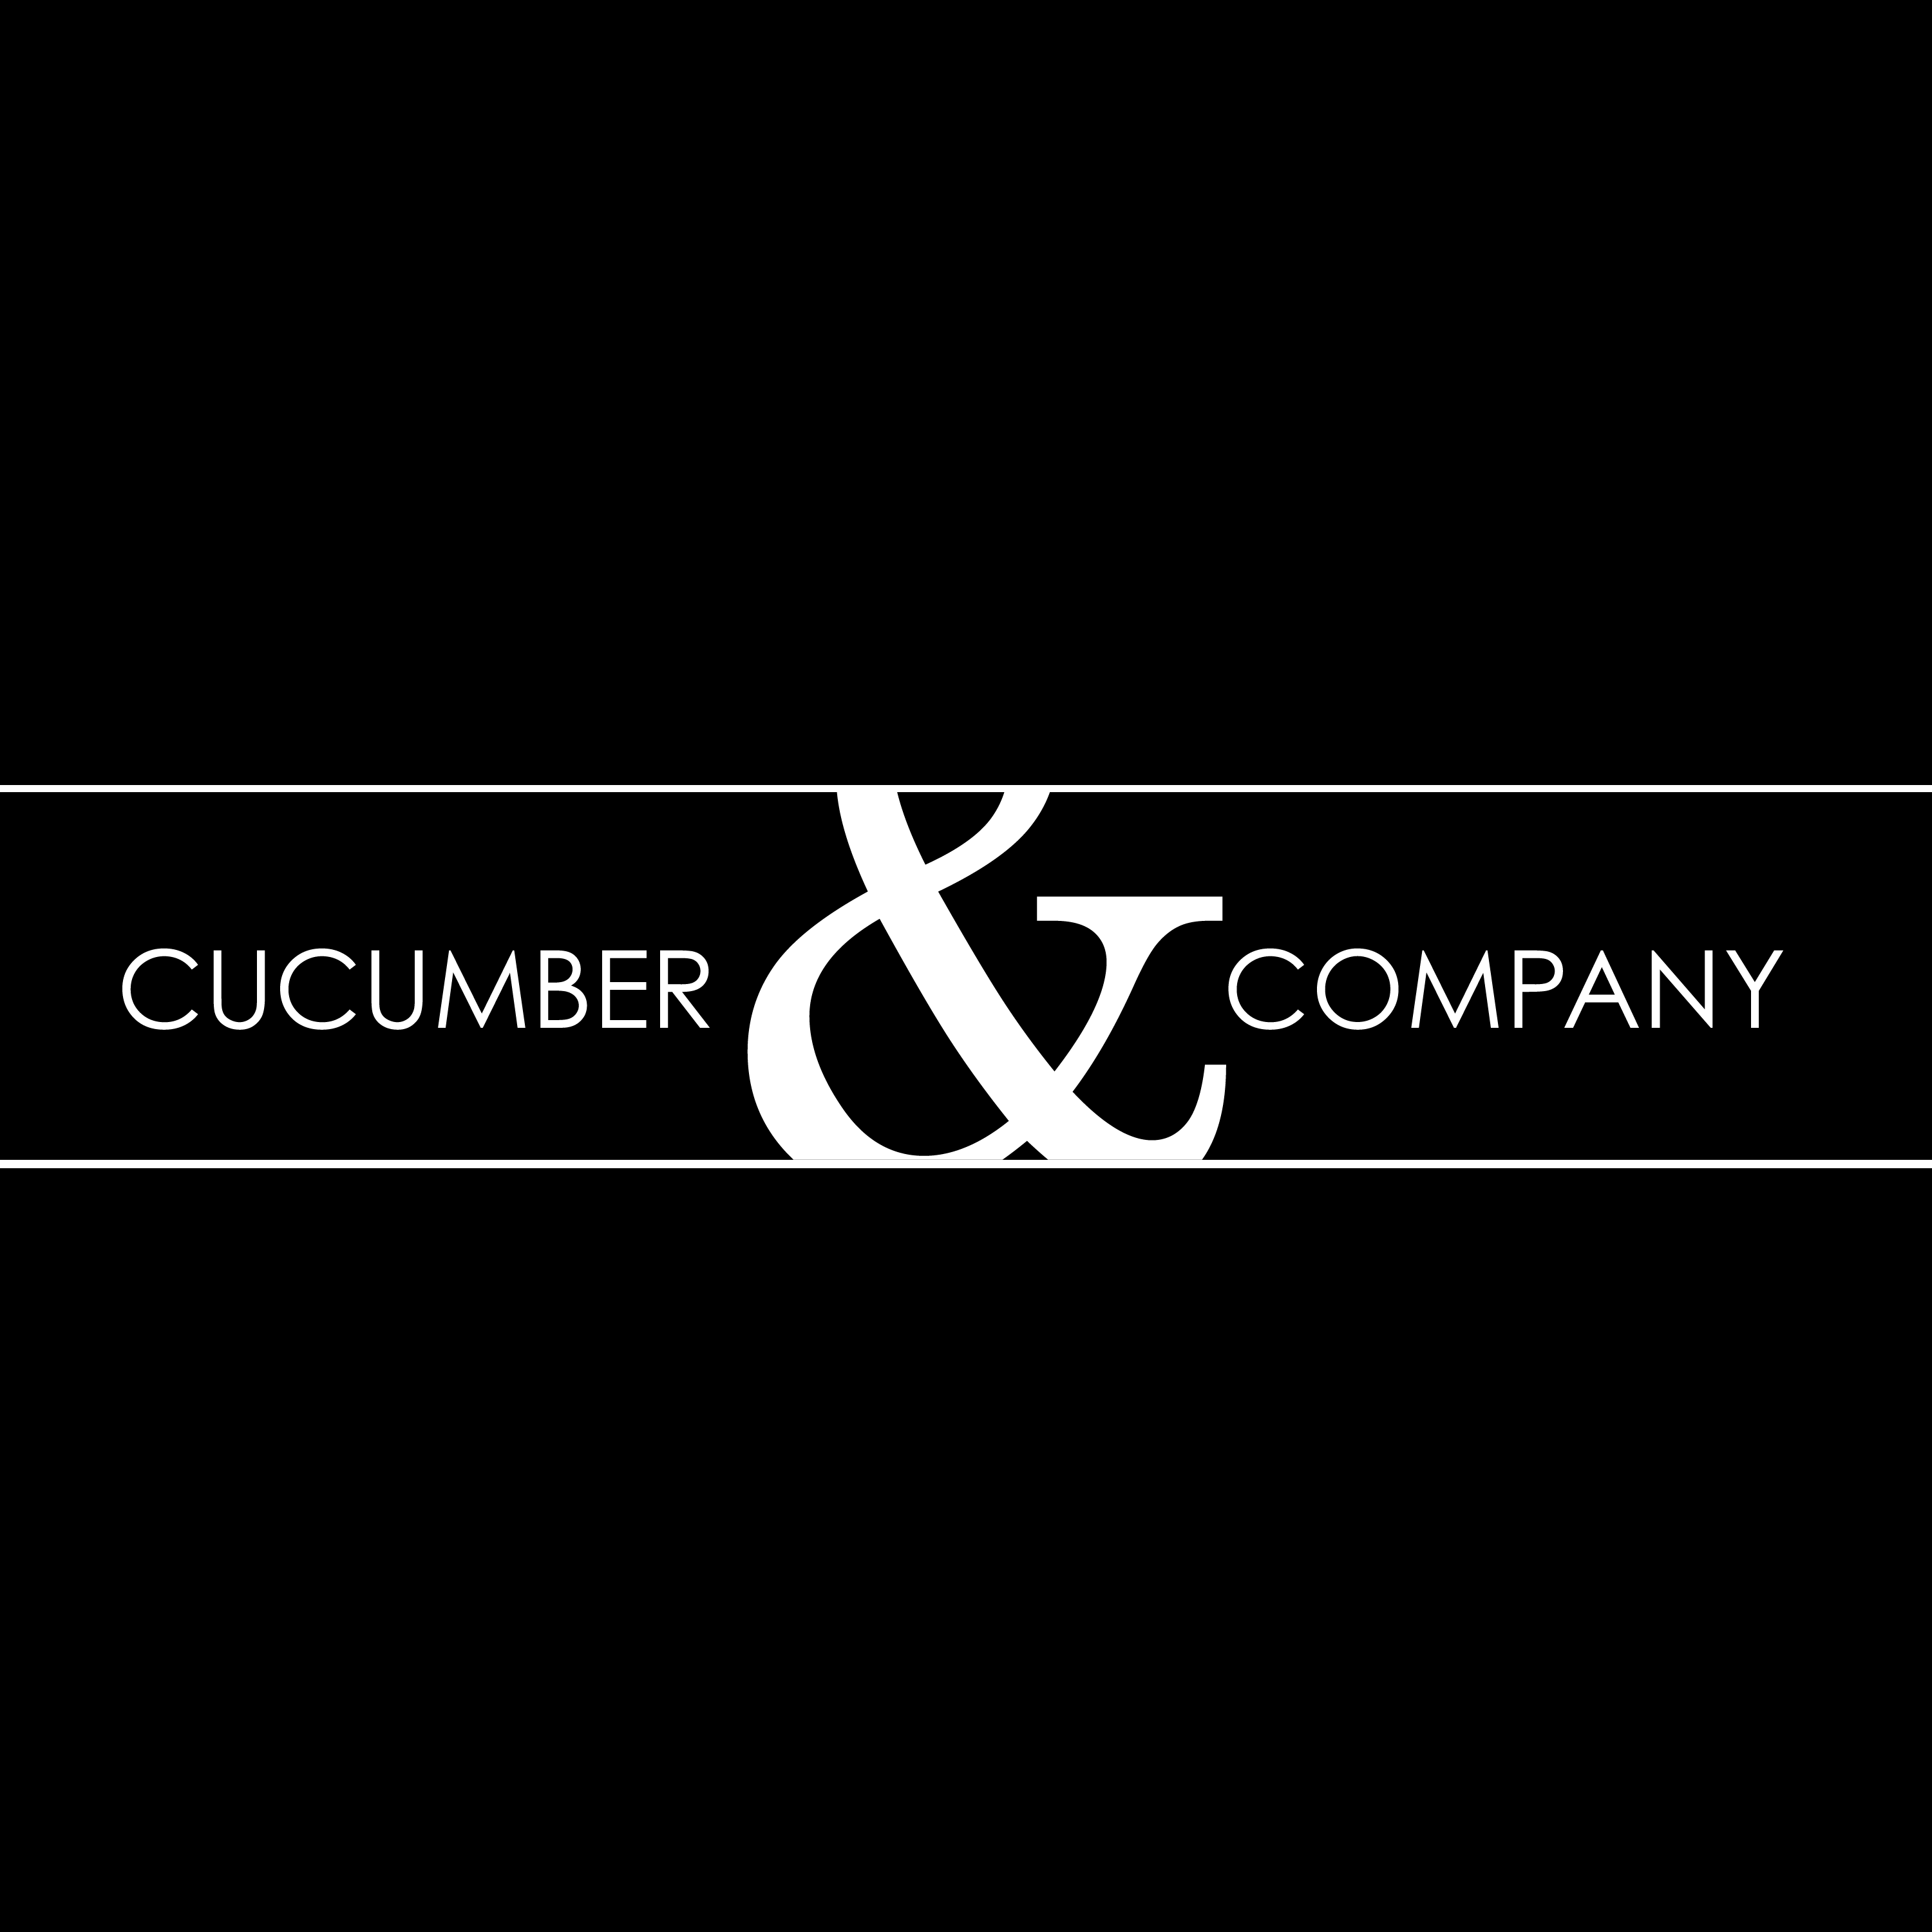 Cucumber & Company